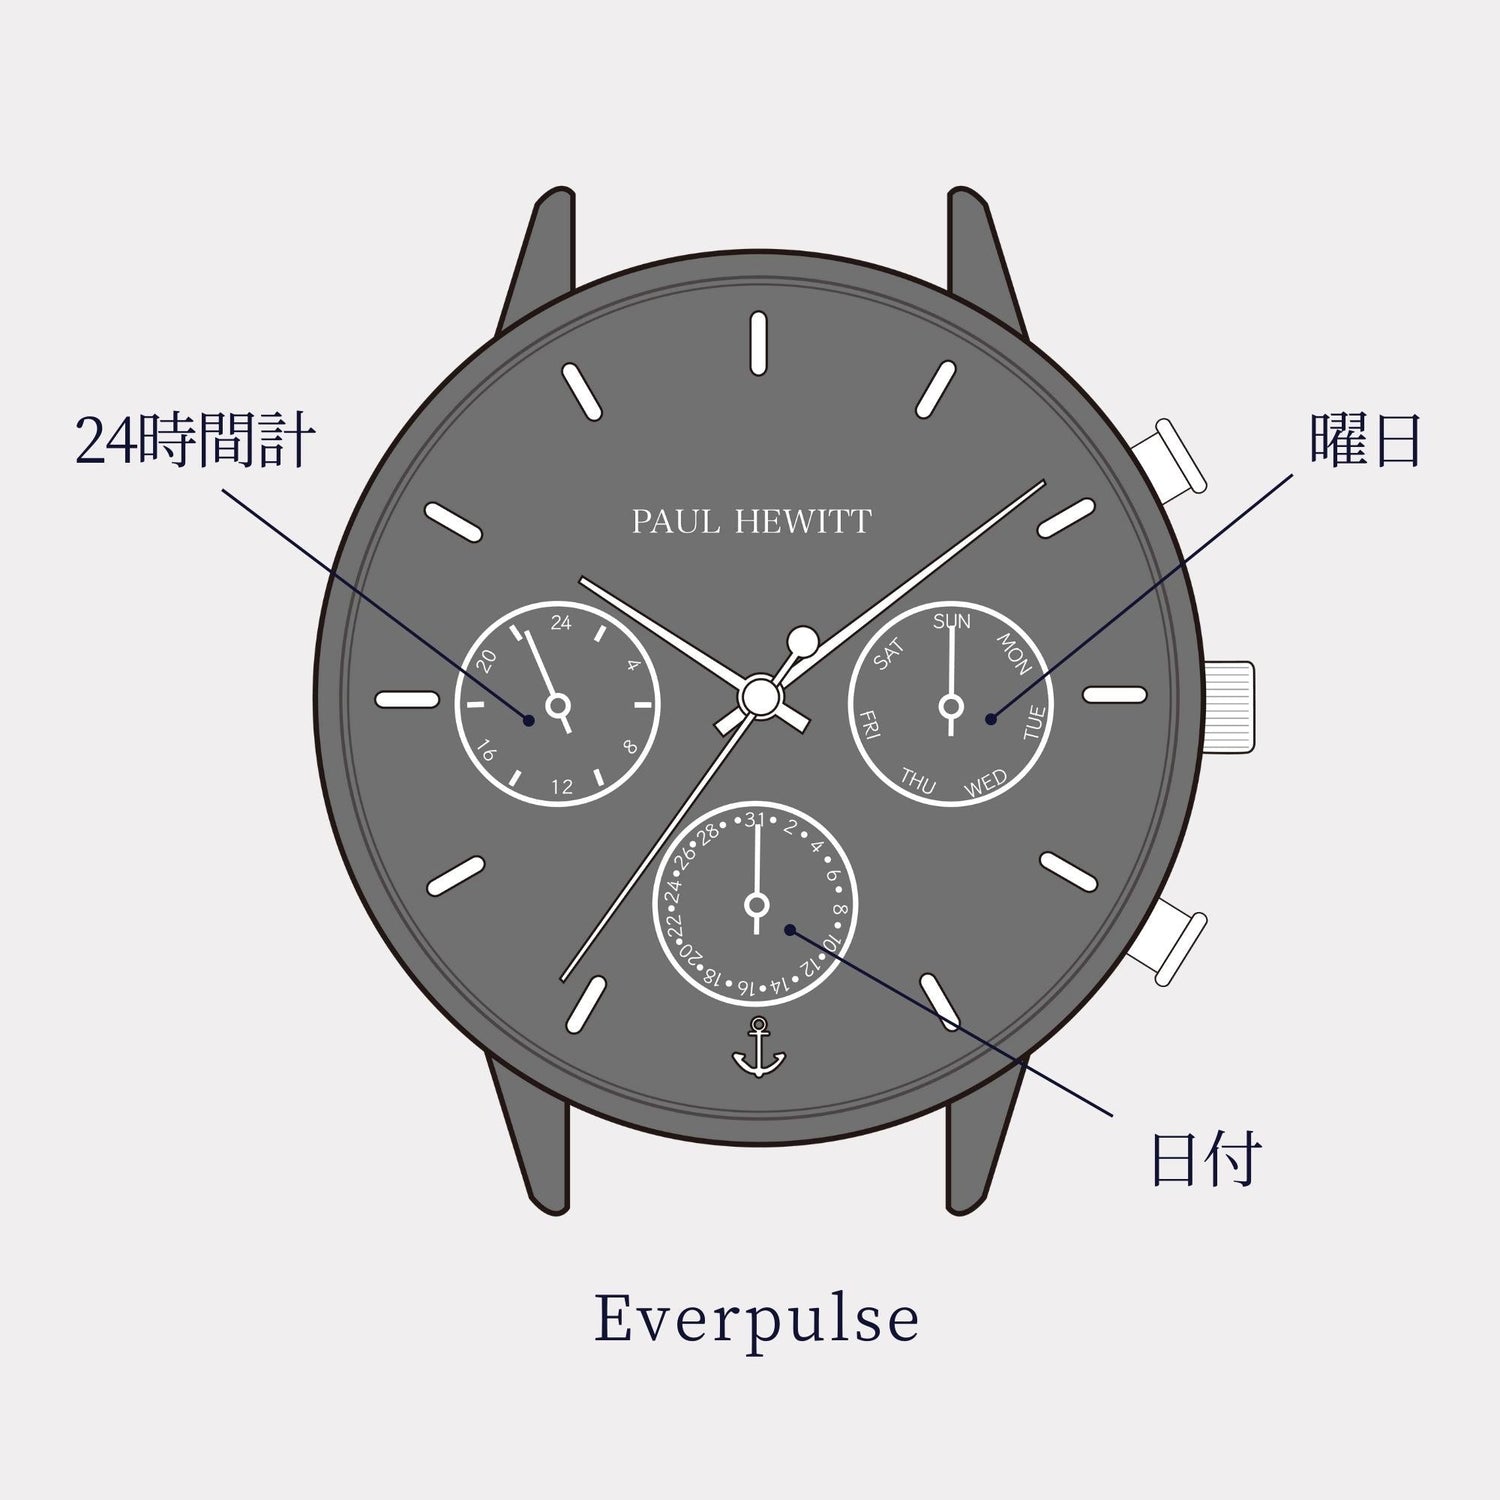 Everpulse ダークモーヴ - ポールヒューイット日本公式サイト